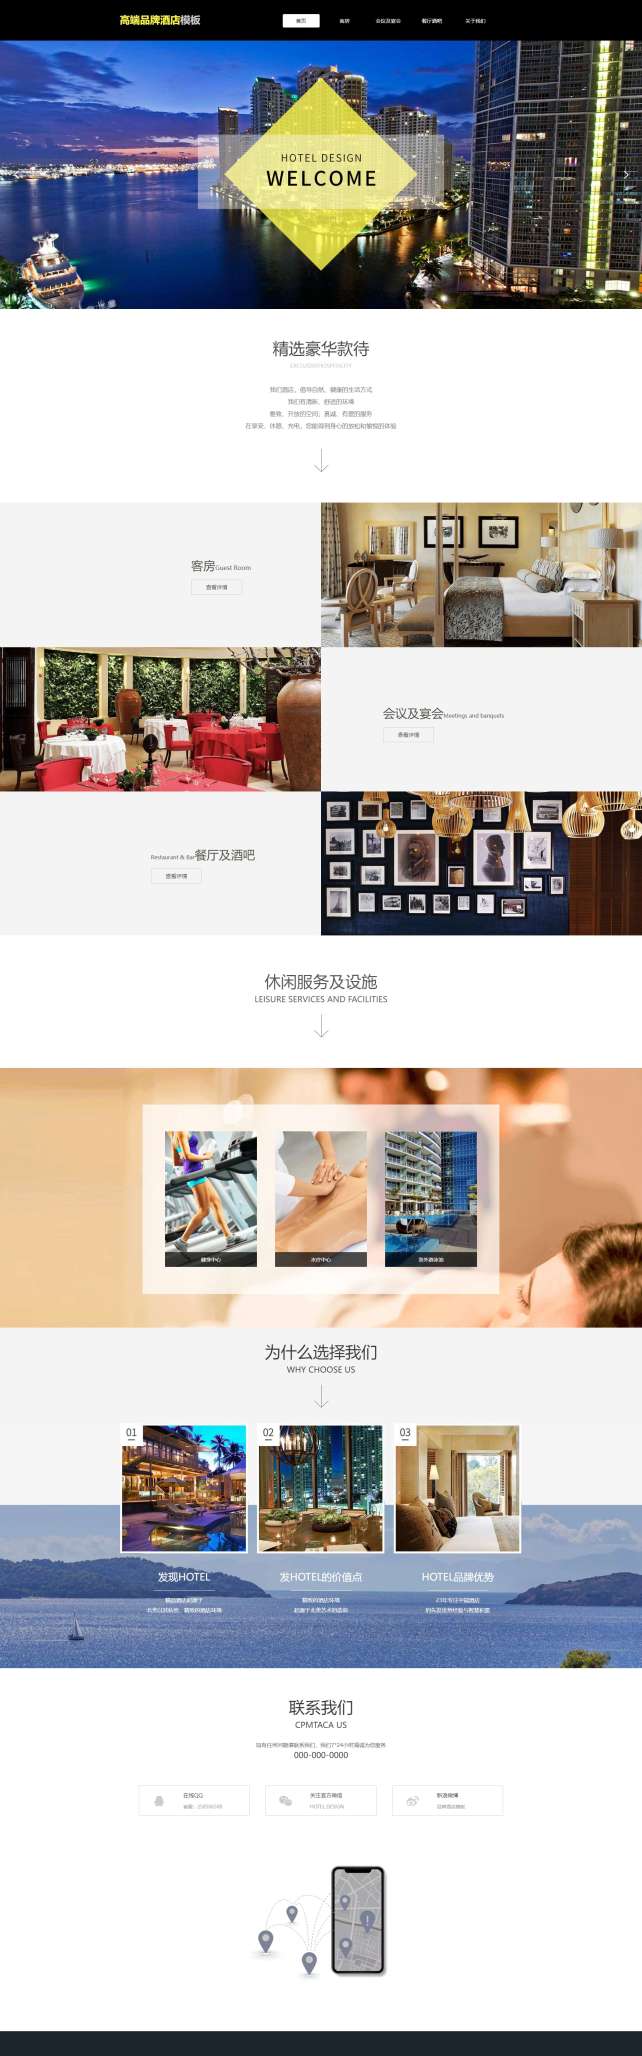 精选高端品牌酒店网站模板